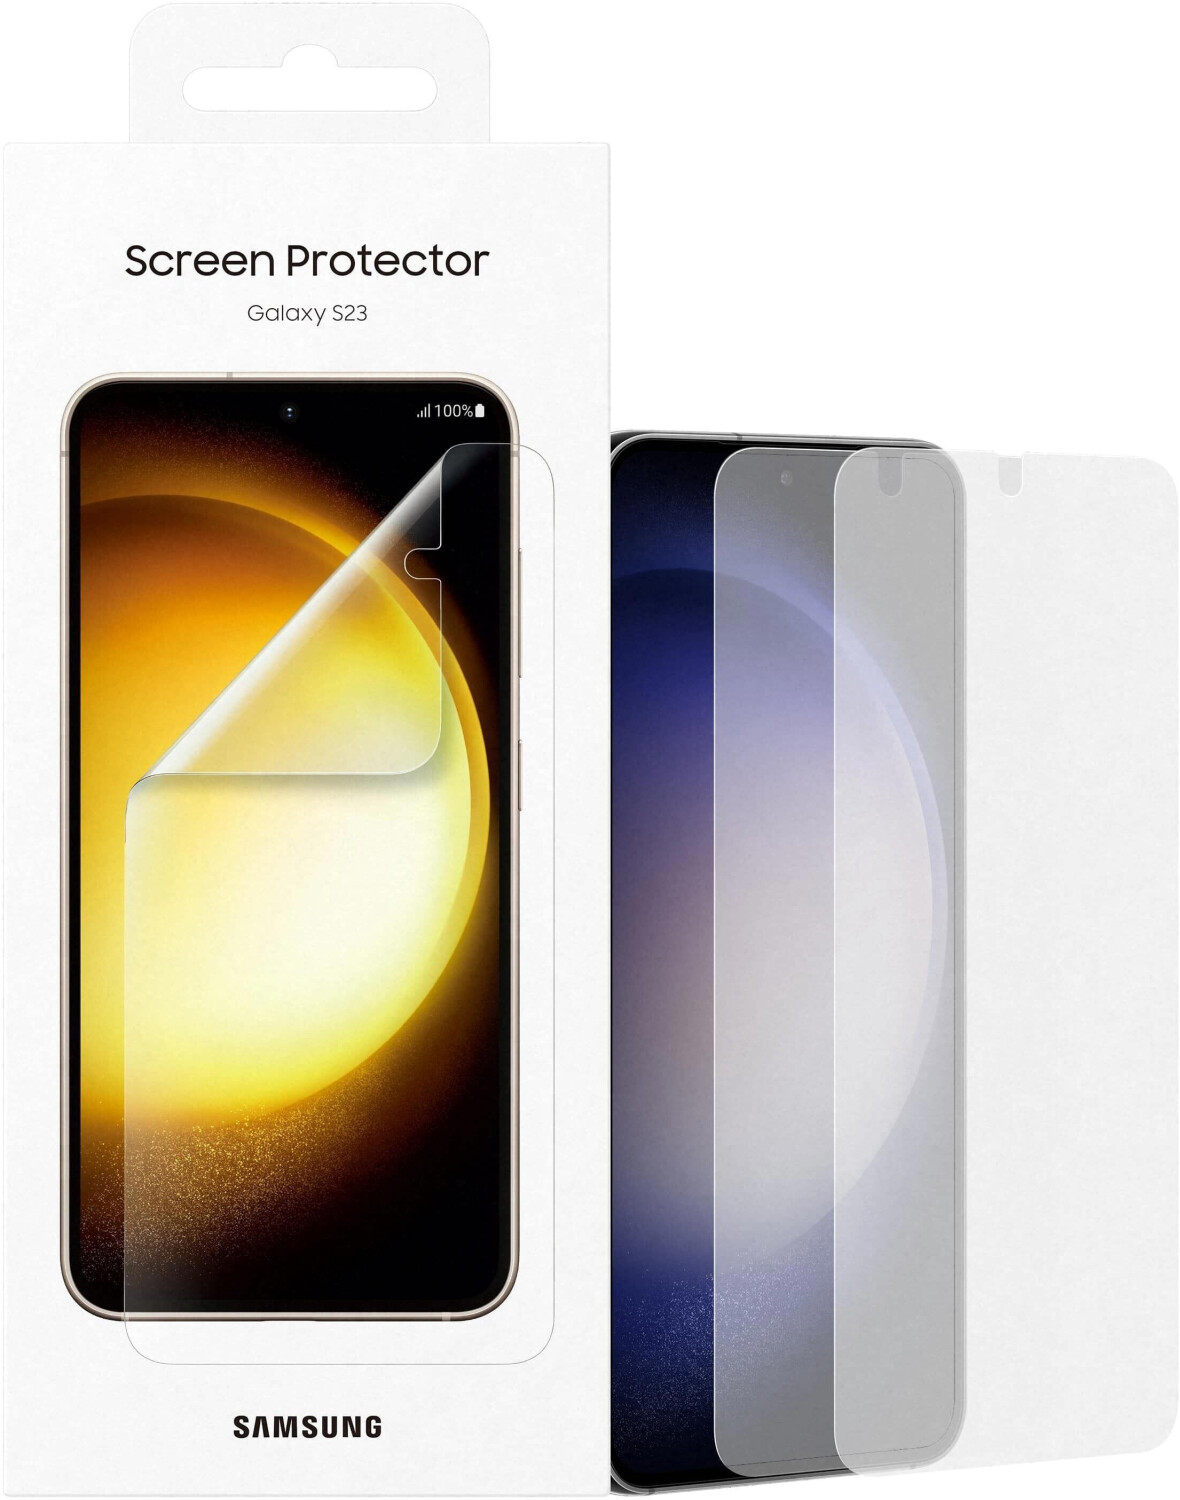 Photos - Screen Protect Samsung Screen Protector  (Galaxy S23)